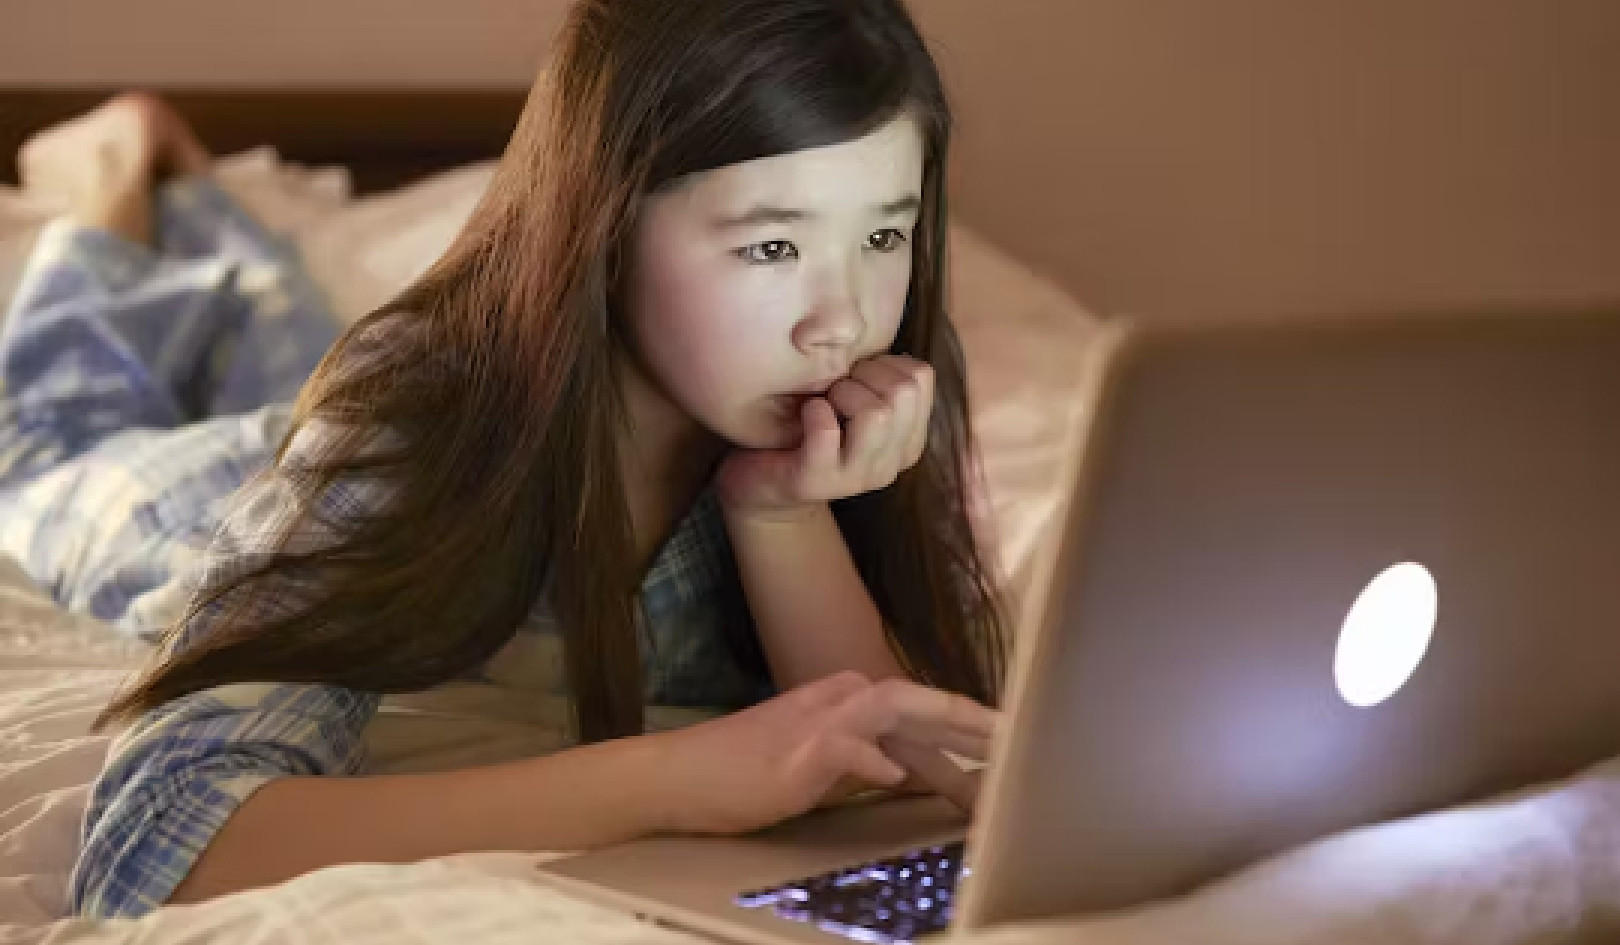 Le webcam dei bambini vengono prese di mira dai predatori online